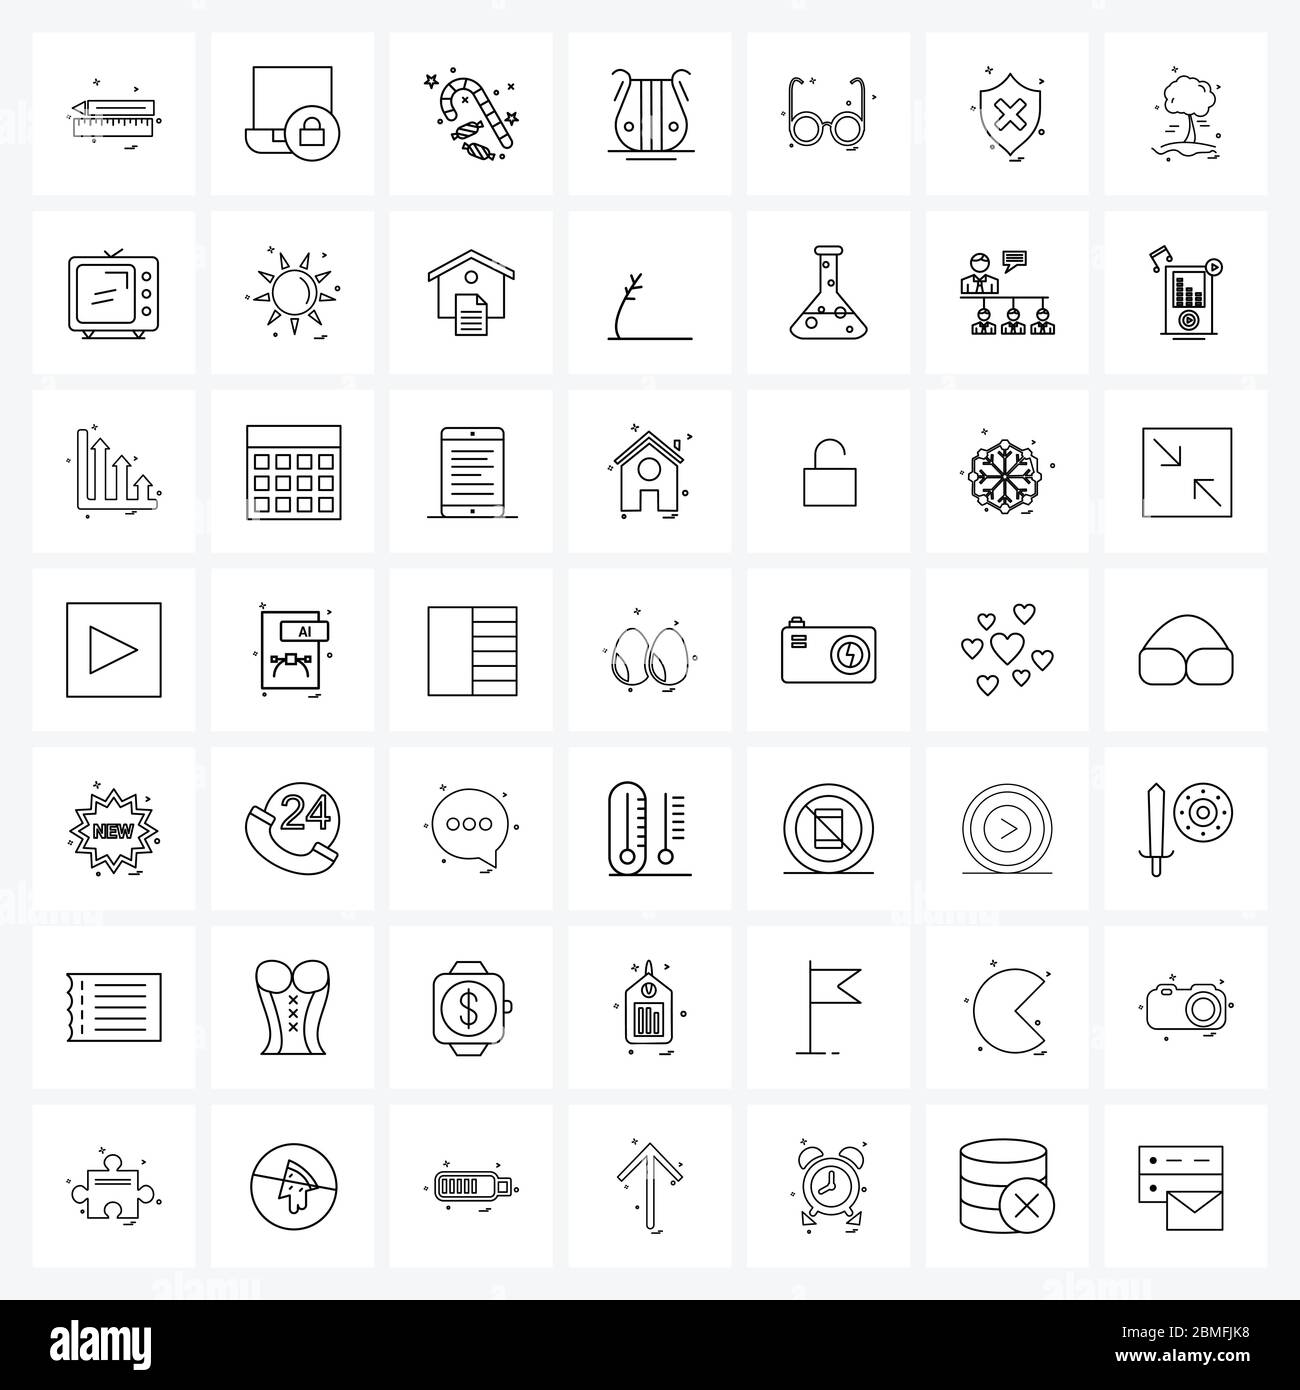 Jeu de 49 icônes et symboles UI pour lunettes, art, mot de passe, musique, illustration vectorielle de Noël Illustration de Vecteur